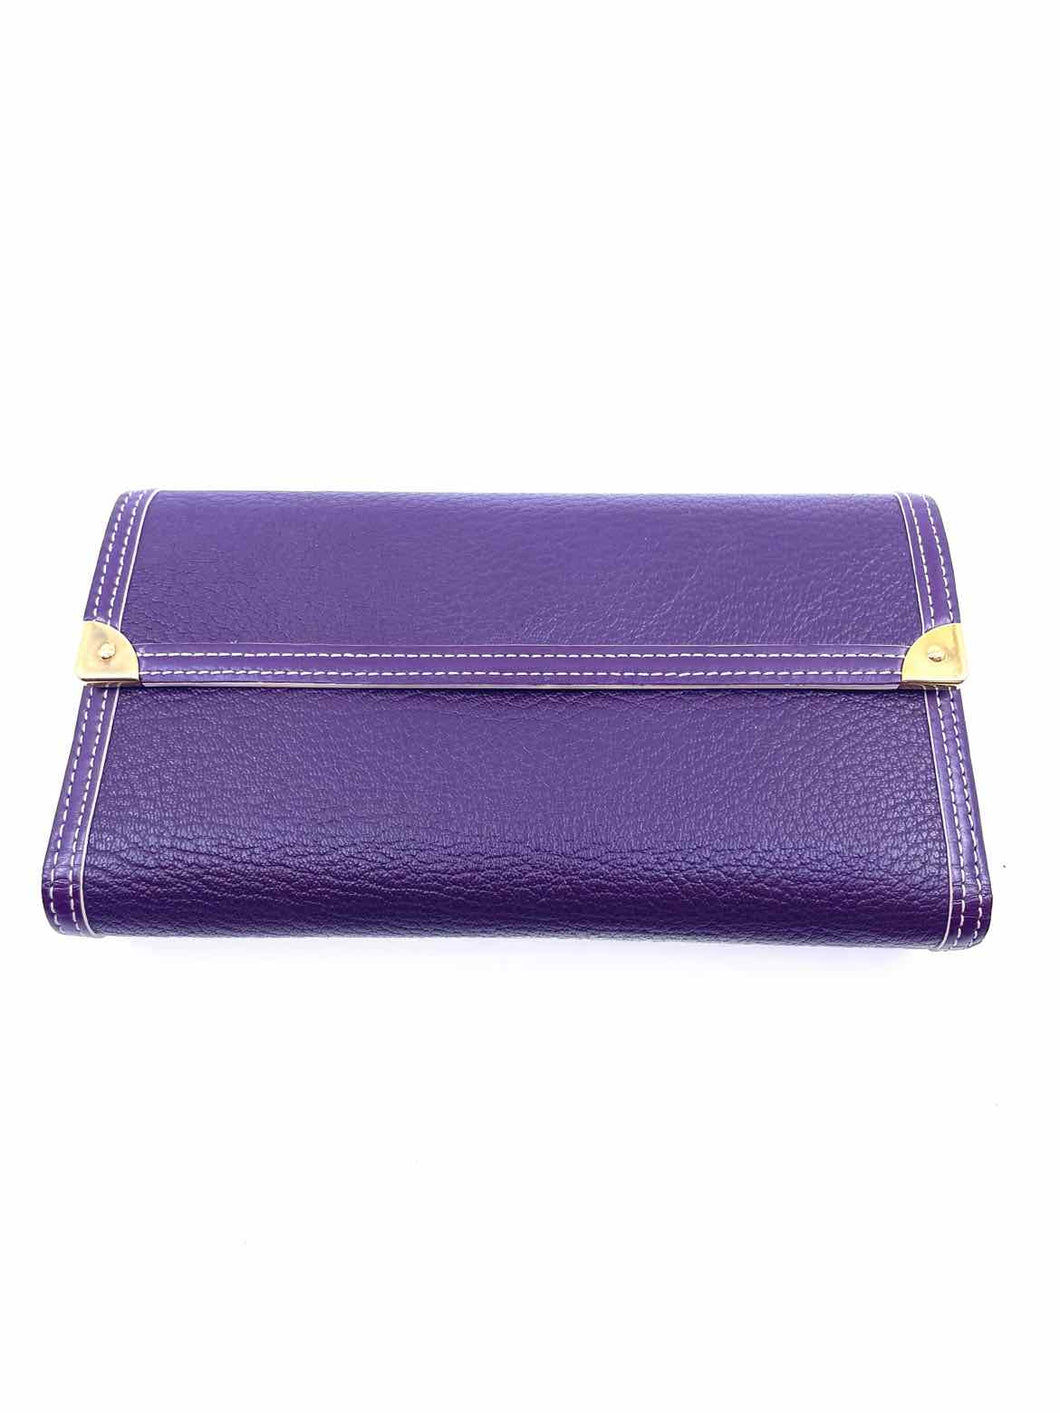 LOUIS VUITTON Purple Leather Wallet